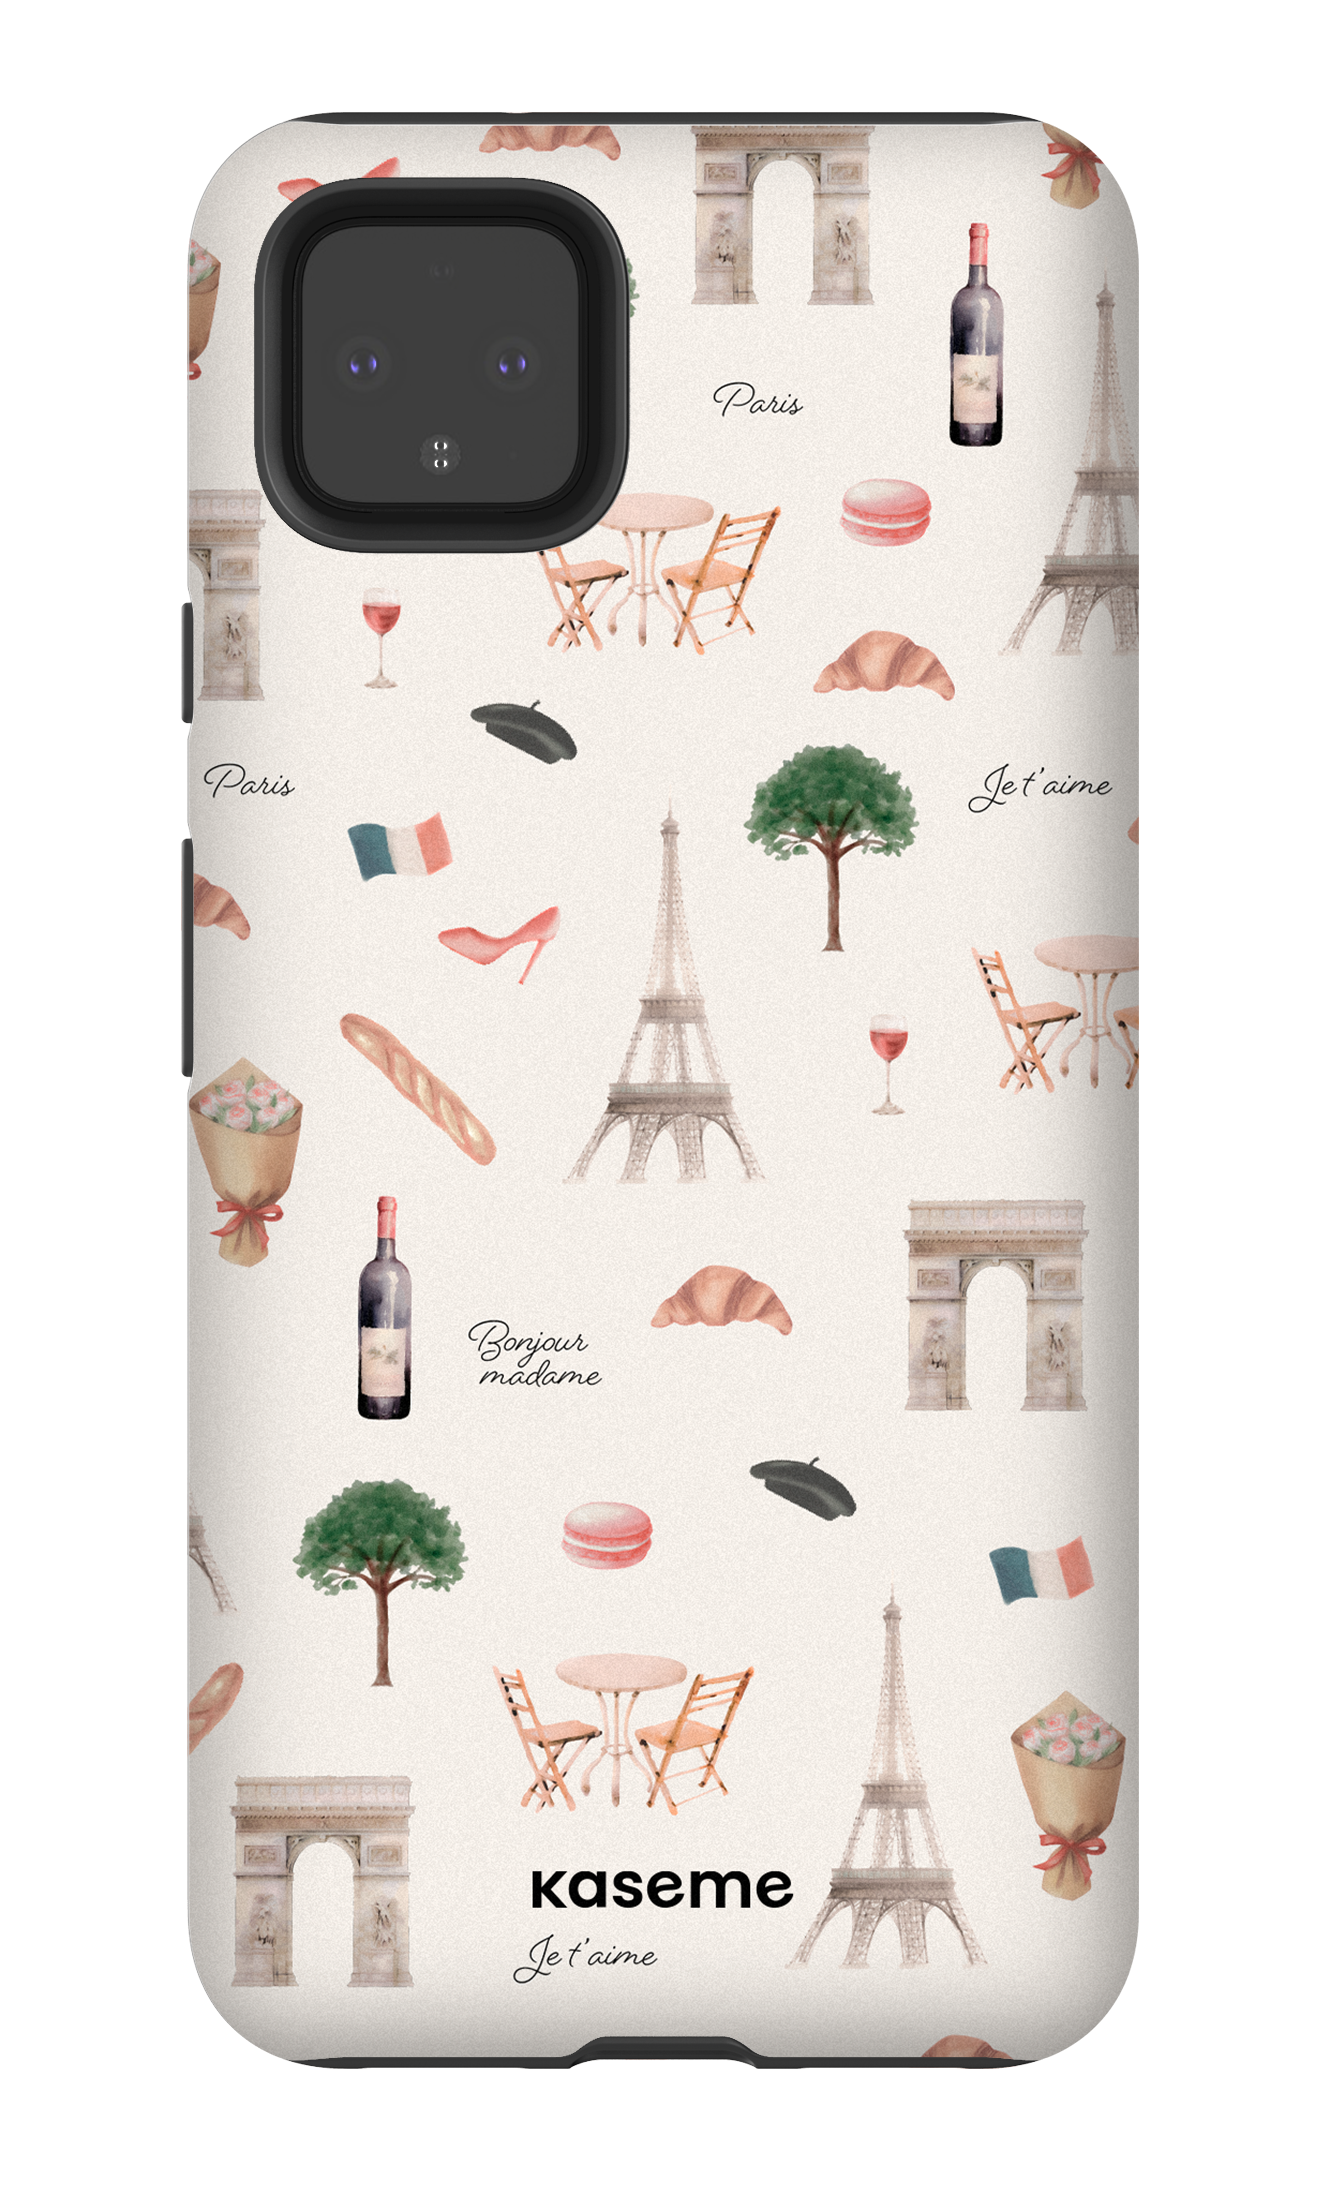 Je t'aime Paris - Google Pixel 4 XL